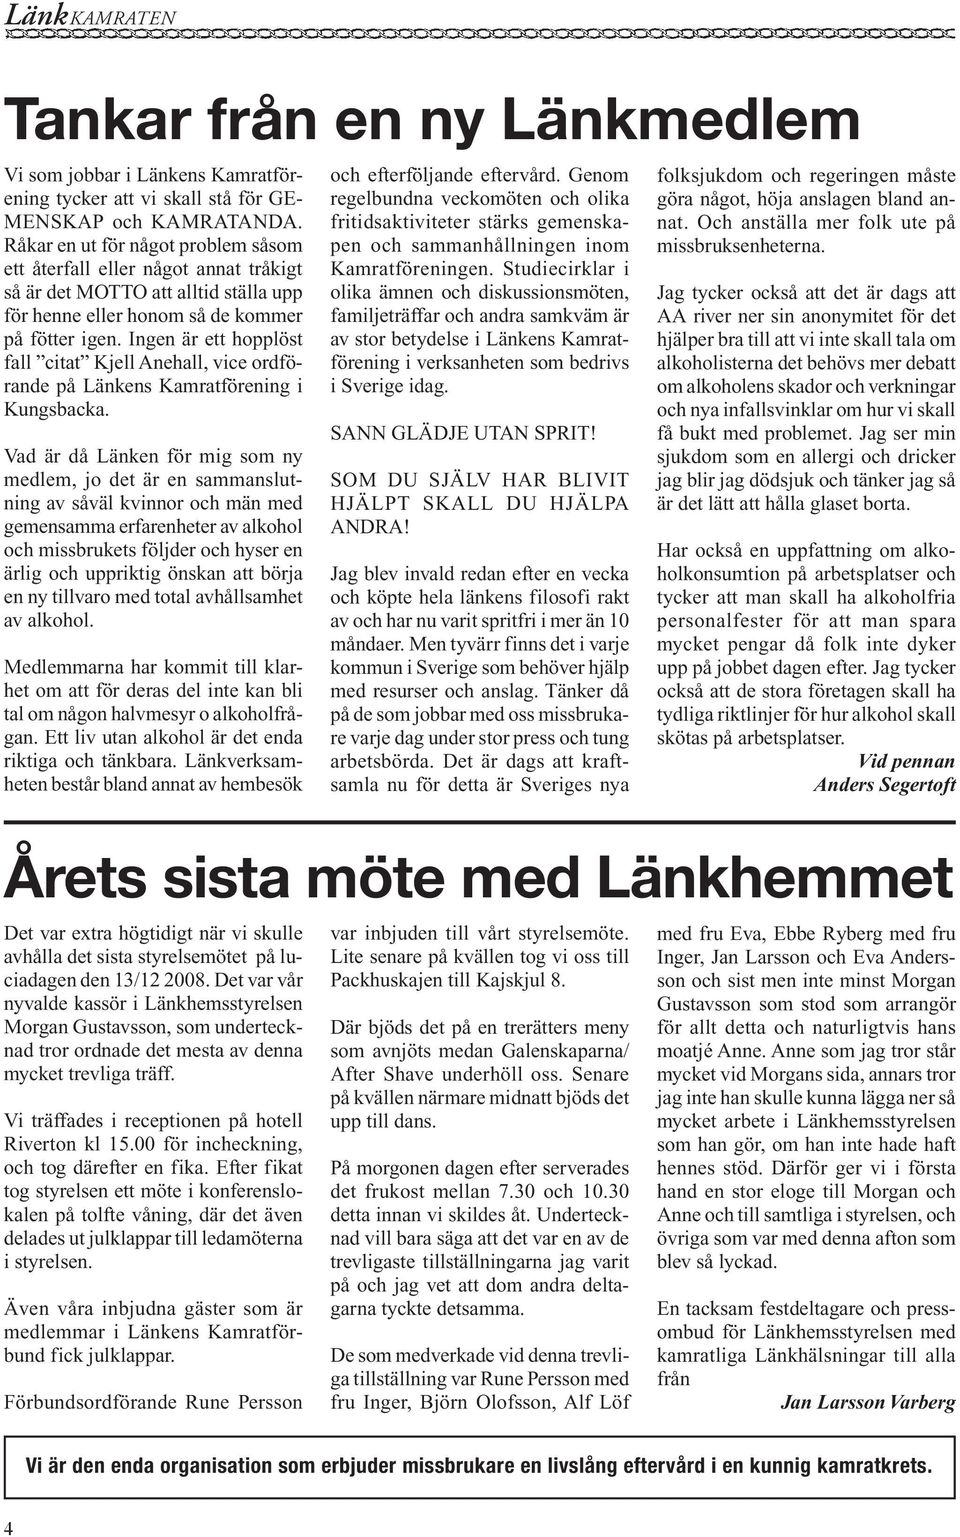 Ingen är ett hopplöst fall citat Kjell Anehall, vice ordförande på Länkens Kamratförening i Kungsbacka.